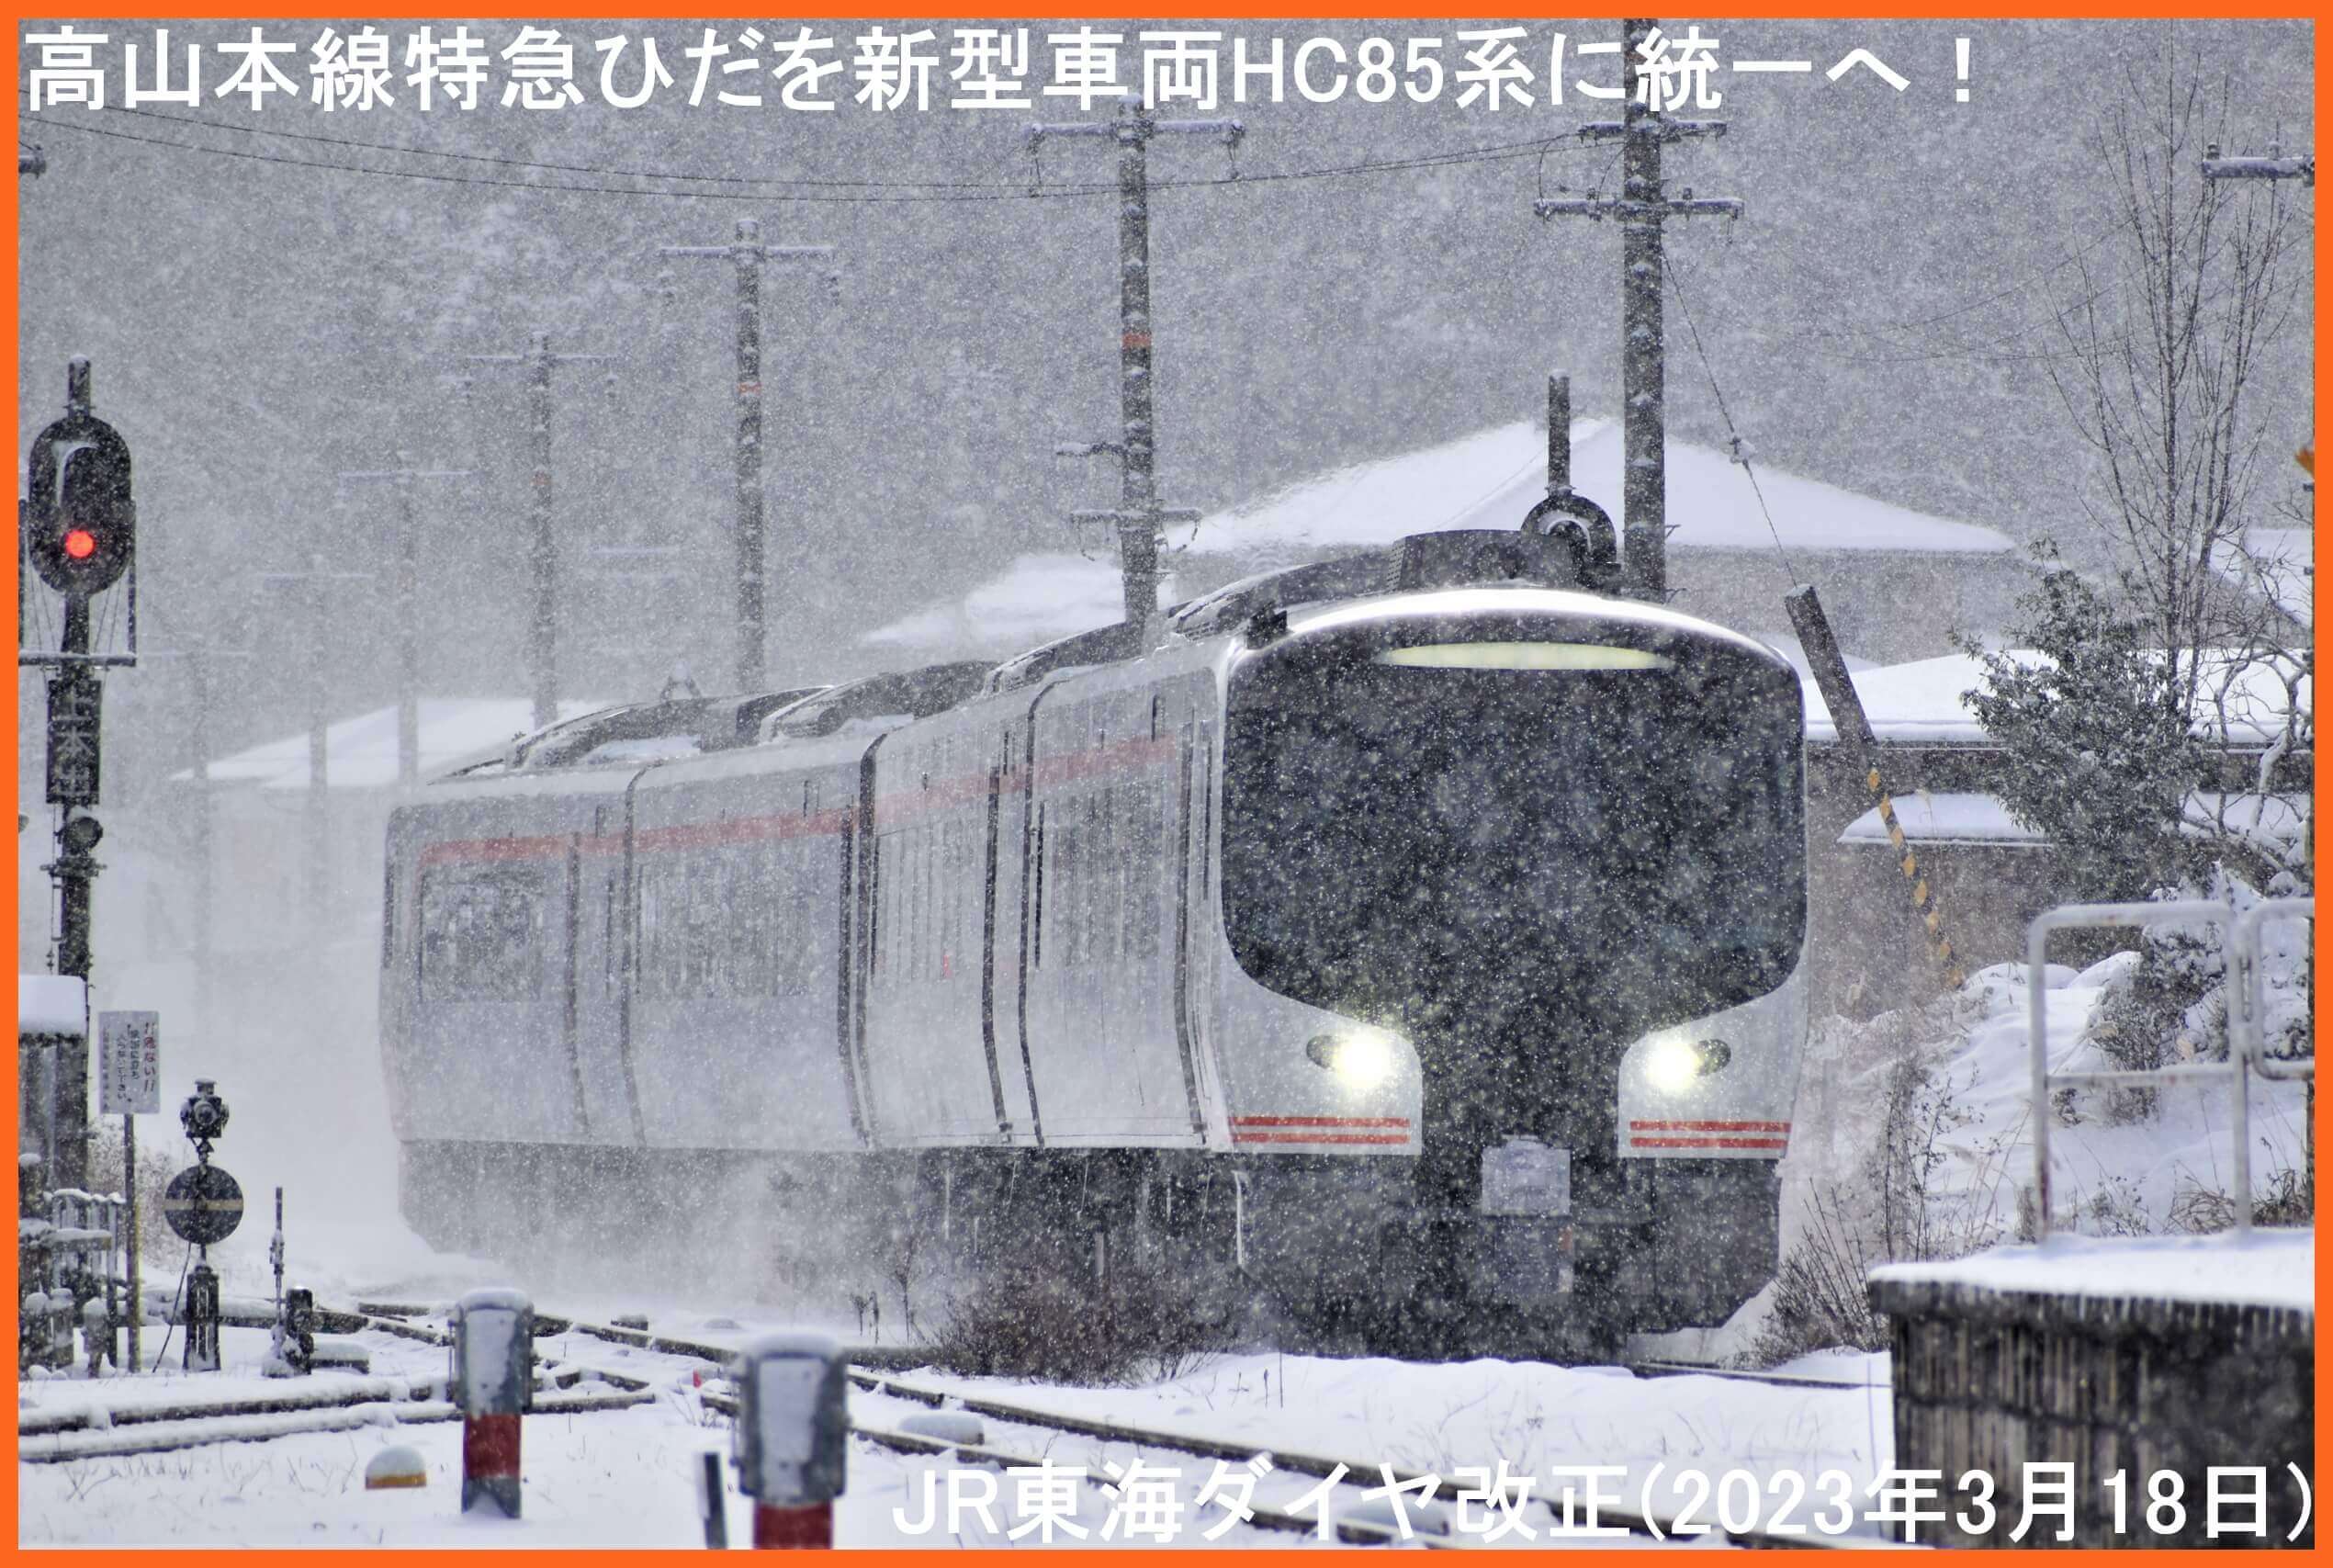 高山本線特急ひだを新型車両HC85系に統一へ！　JR東海ダイヤ改正(2023年3月18日)